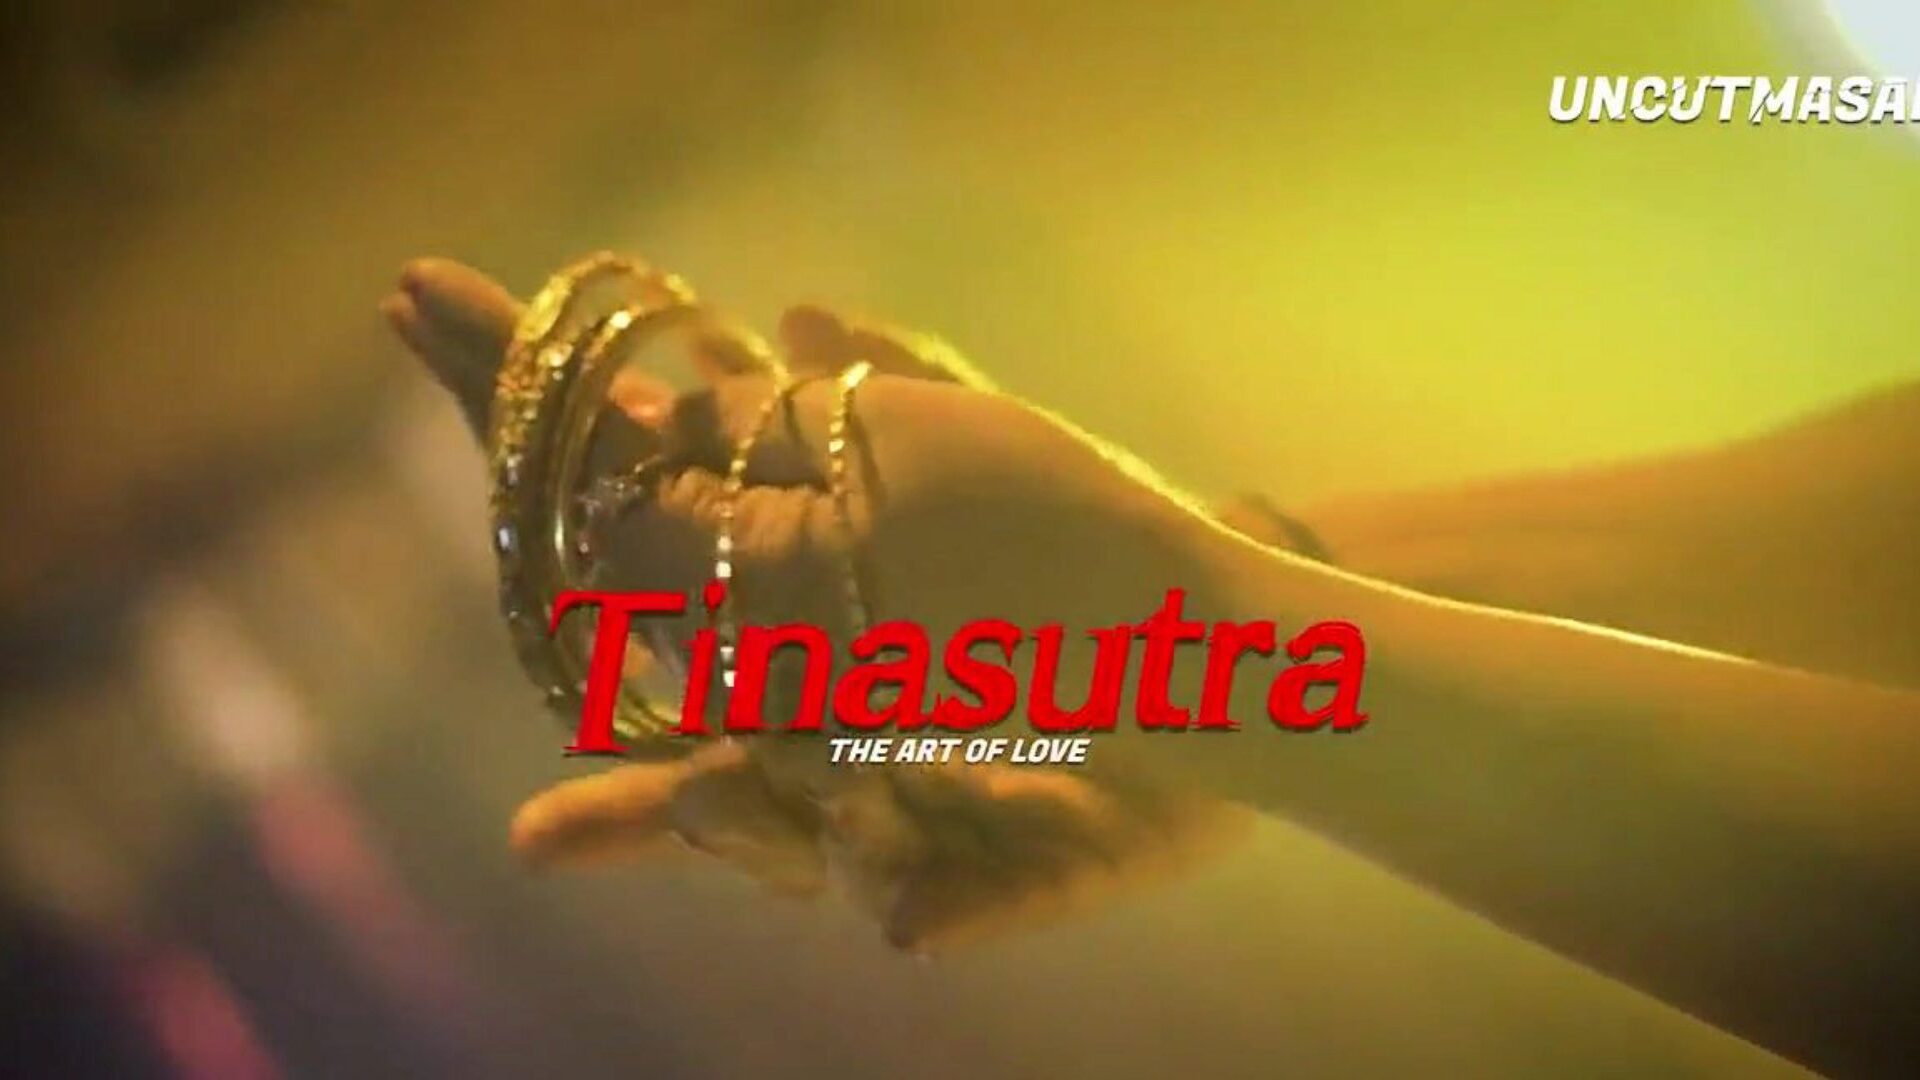 tinasutra eine bengalische Sexgeschichte, kostenloser indischer HD-Porno b9 Sieh dir Tinasutra an, einen bengalischen Sex-Story-Clip auf xhamster, der besten HD-Fick-a-Thon-Tube-Website mit tonnenweise kostenlosen asiatischen indischen und kostenlosen bengalischen Pornografie-Videos